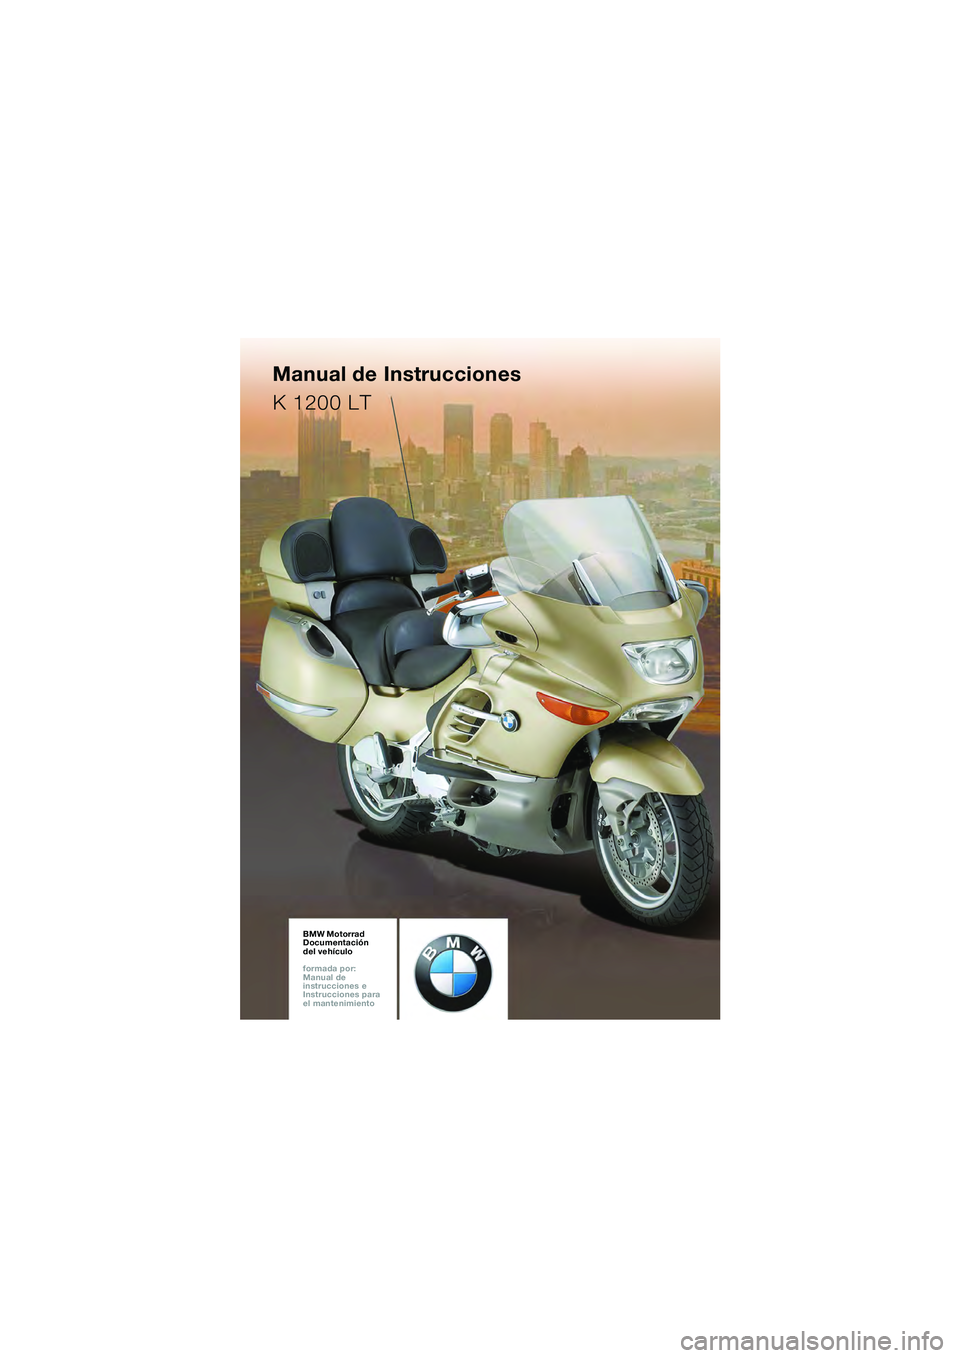 BMW MOTORRAD K 1200 LT 2005  Manual de instrucciones (in Spanish) BMW Motorrad
Documentación  
del vehículo
formada por:  
Manual de  
instrucciones e  
Instrucciones para  
el mantenimientoBMW Motorrad
Documentación  
del vehículo
formada por:  
Manual de  
ins